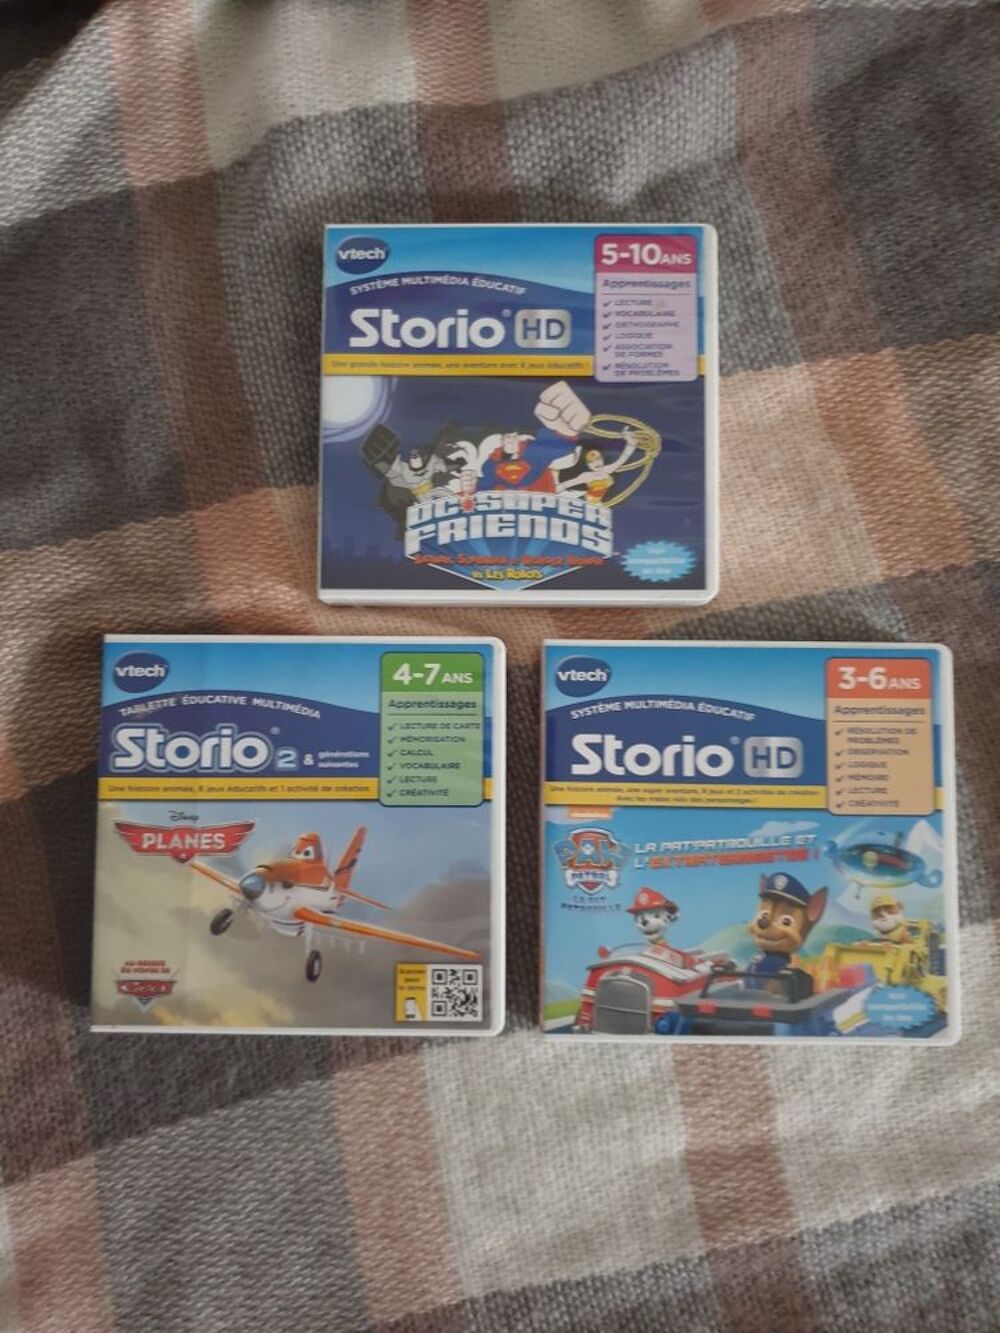 Storio Max Consoles et jeux vidos